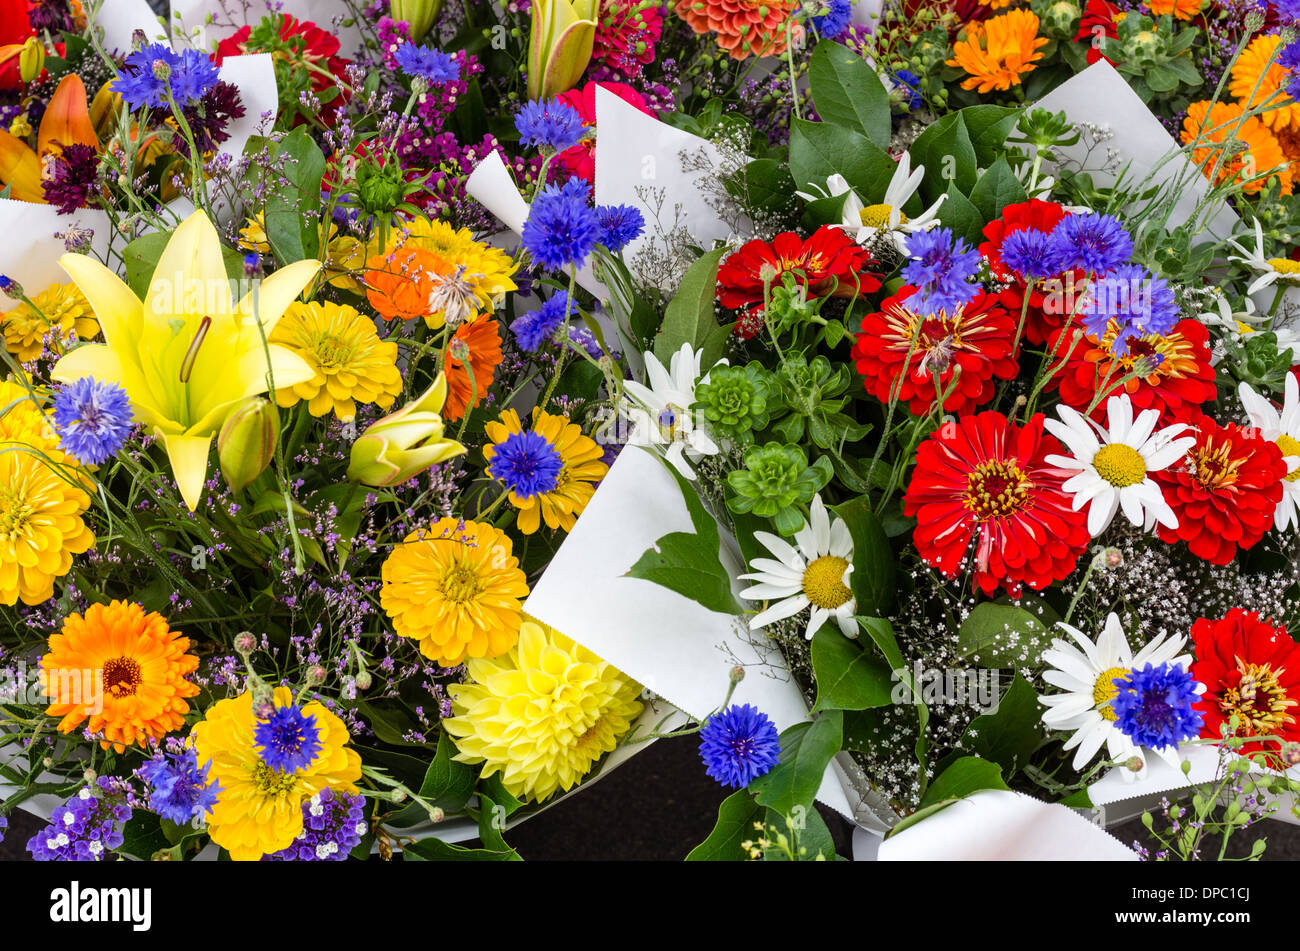 Pakete oder Sträuße mit frischen Blumen auf dem Display an einen Kreditor  stall auf einer Straße Messe oder Markt. Gresham, Oregon, USA  Stockfotografie - Alamy